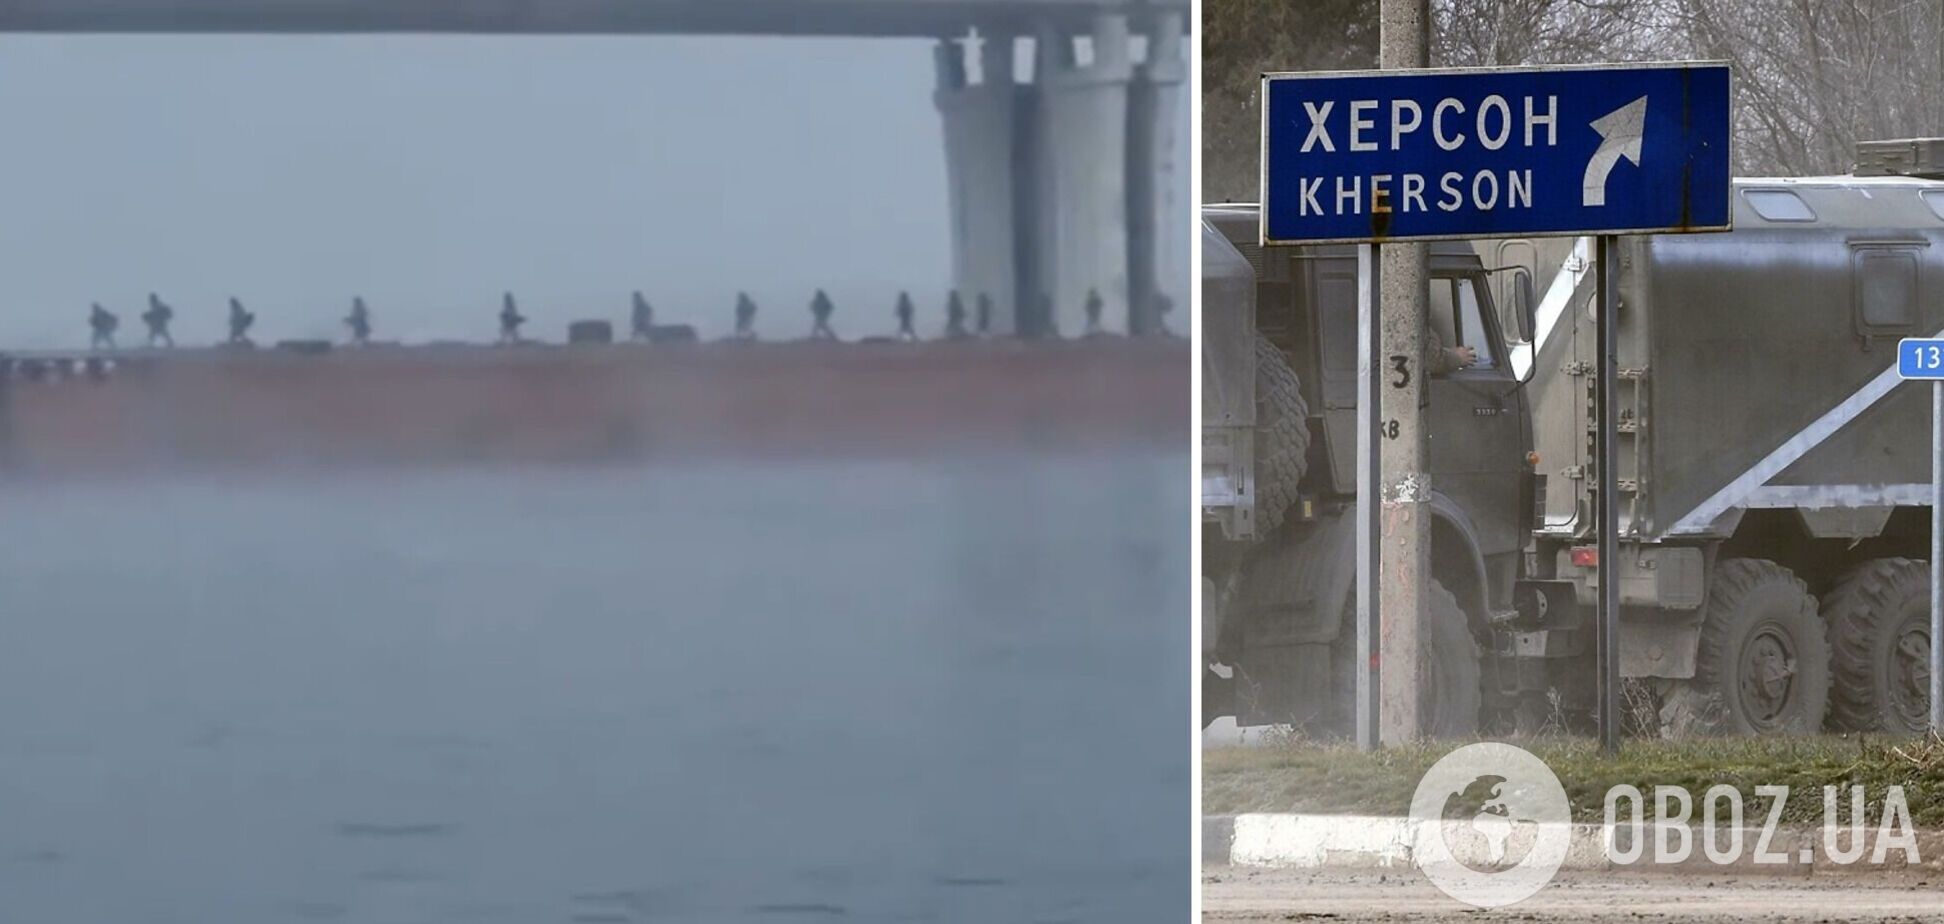 'Негативний наступ': у мережі з'явилися кадри втечі російських окупантів із Херсона. Відео 